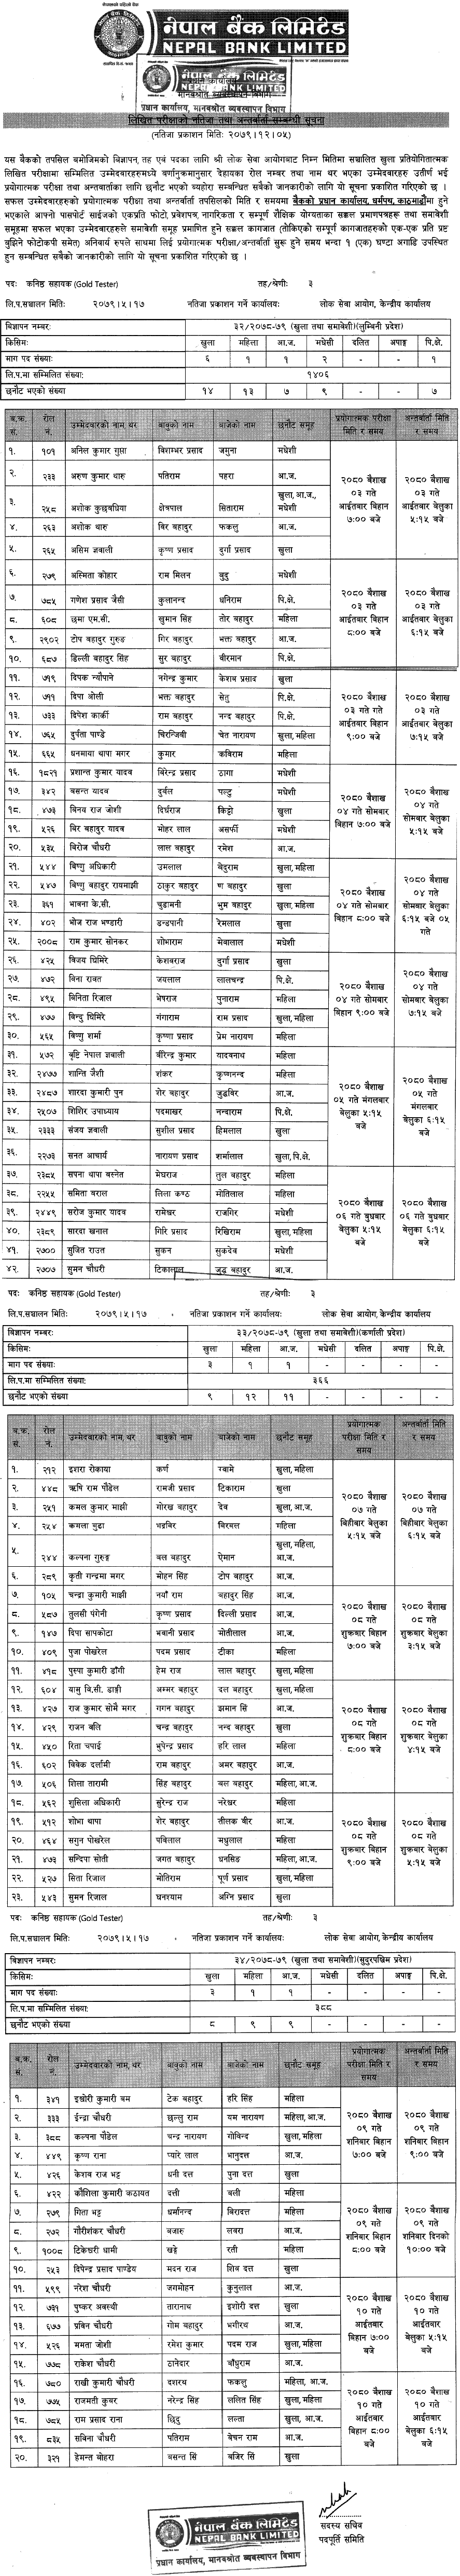 {NBL} Nepal Bank Limited Schedule of Gold Tester (Karnali, Lumbini, Sudurpashchim Pradesh)